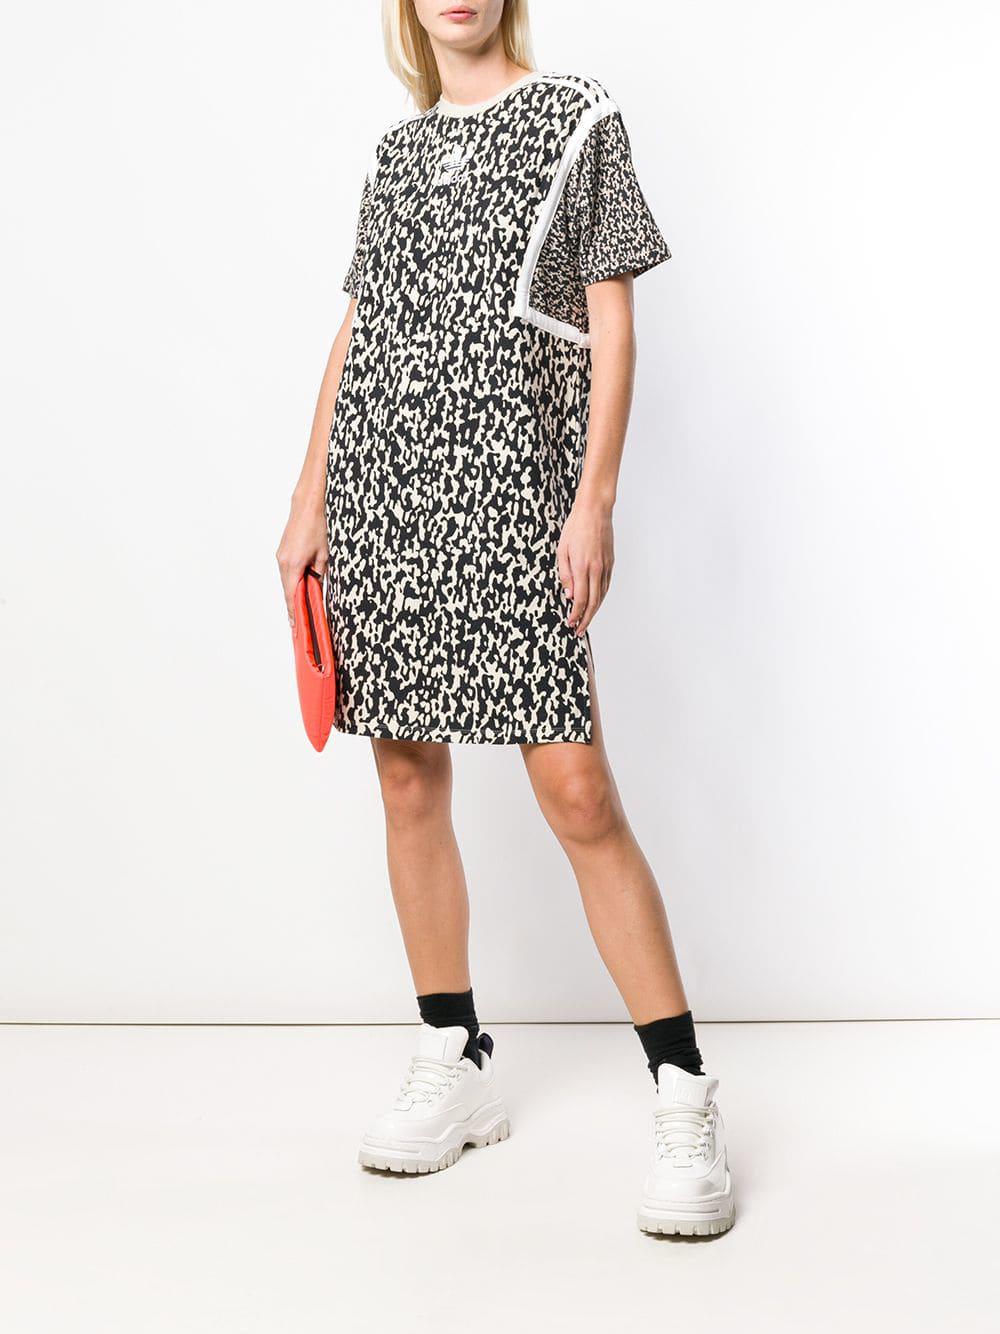 adidas leoflage tee dress